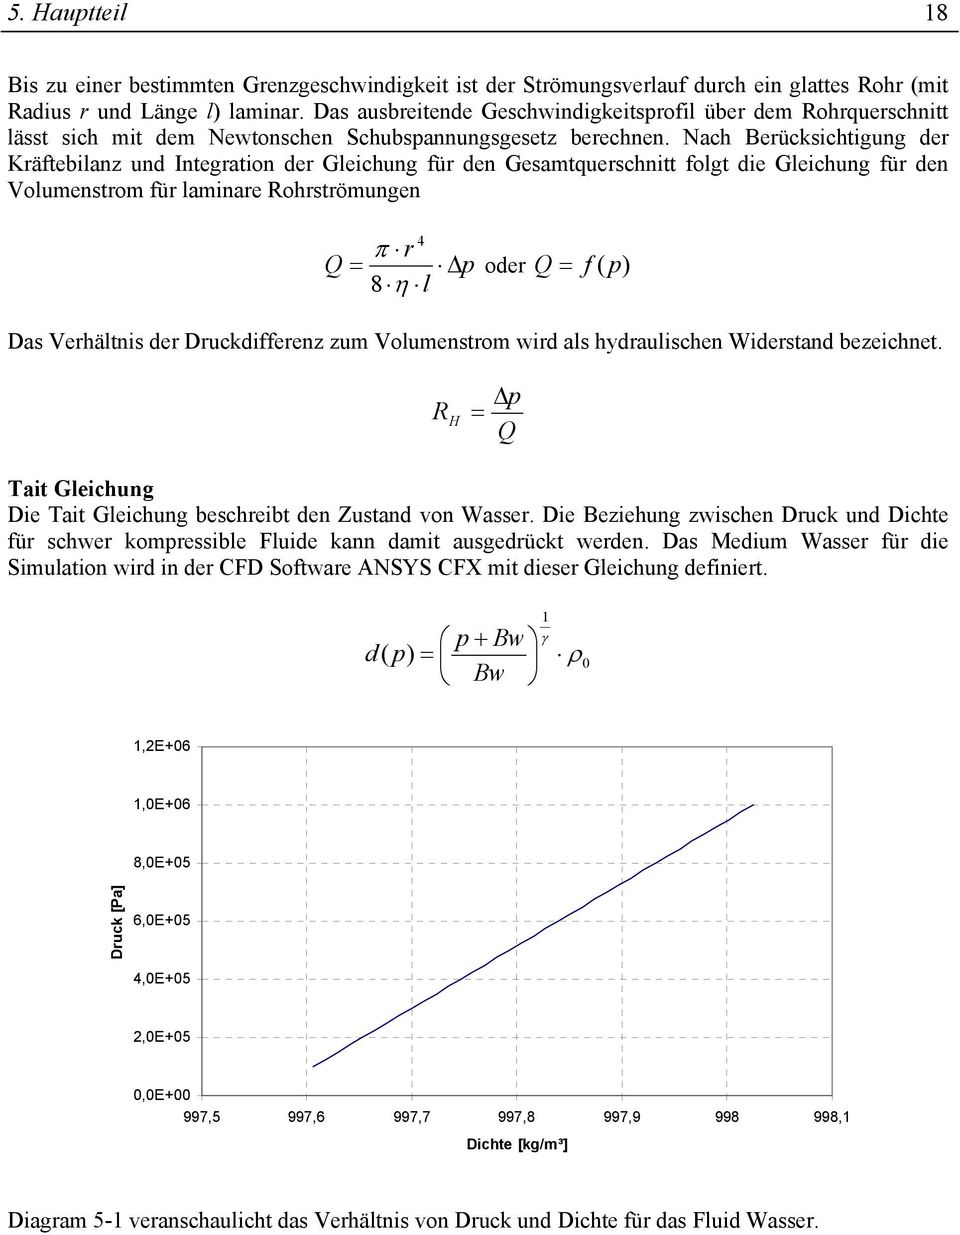 Nach Beücksichtigung de Käftebilanz und Integation de Gleichung fü den Gesamtqueschnitt folgt die Gleichung fü den Volumenstom fü laminae Rohstömungen 4 π Q = p 8 η l ode Q = f ( p) Das Vehältnis de